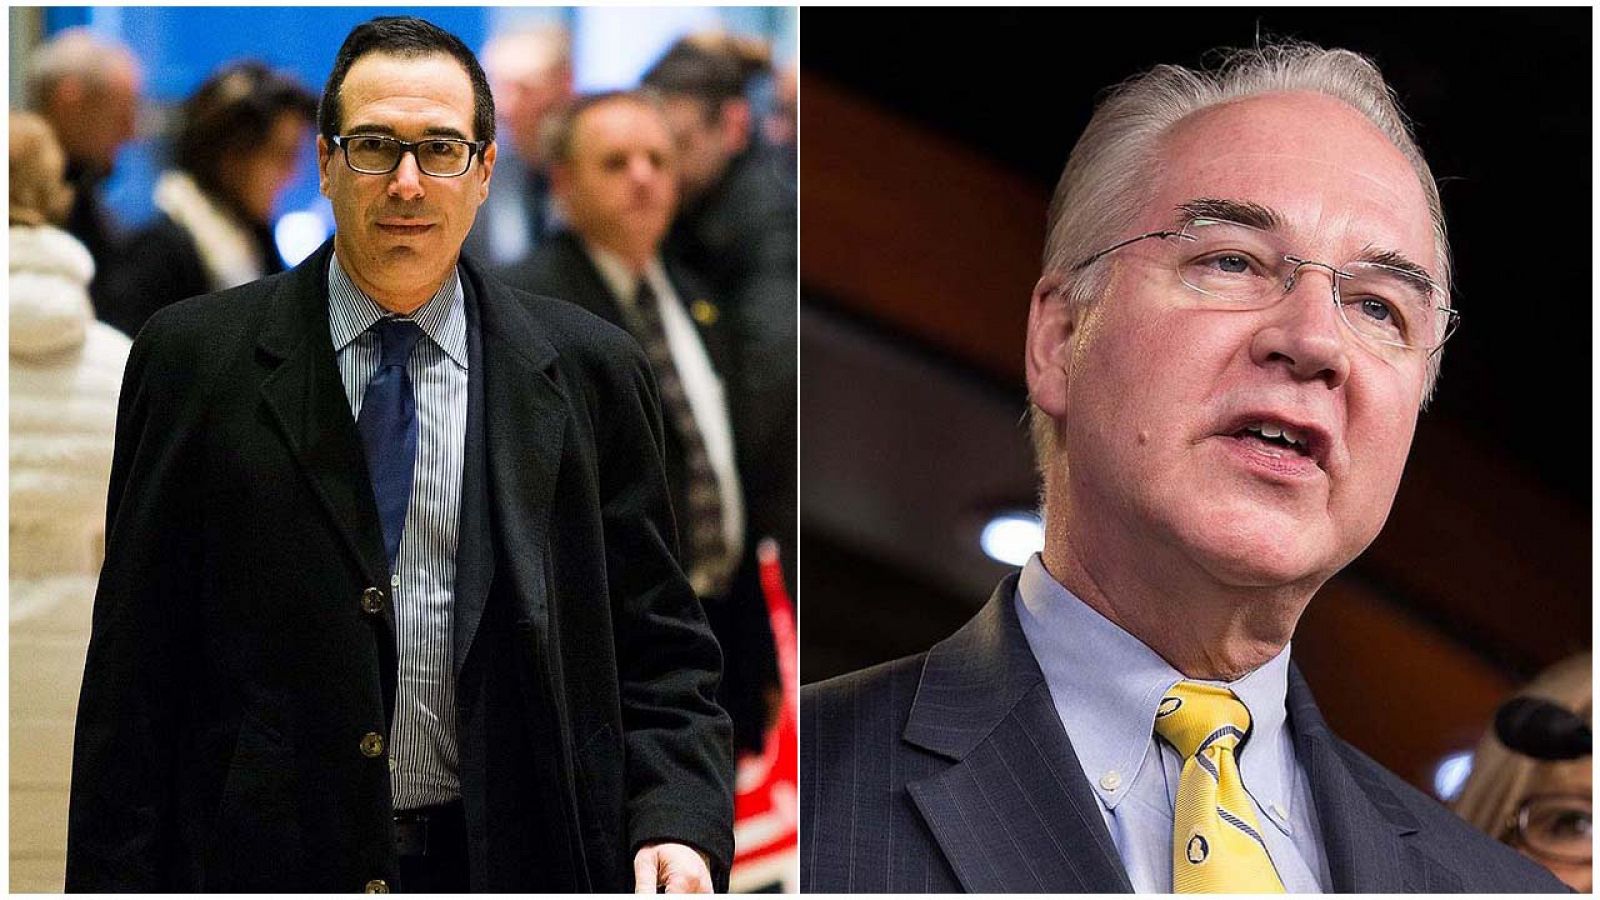 El financiero Steven Mnuchin, nuevo secretario del Tesoro de EE.UU. (izquierda) y el congresista Tom Price, nuevo secretario de Sanidad